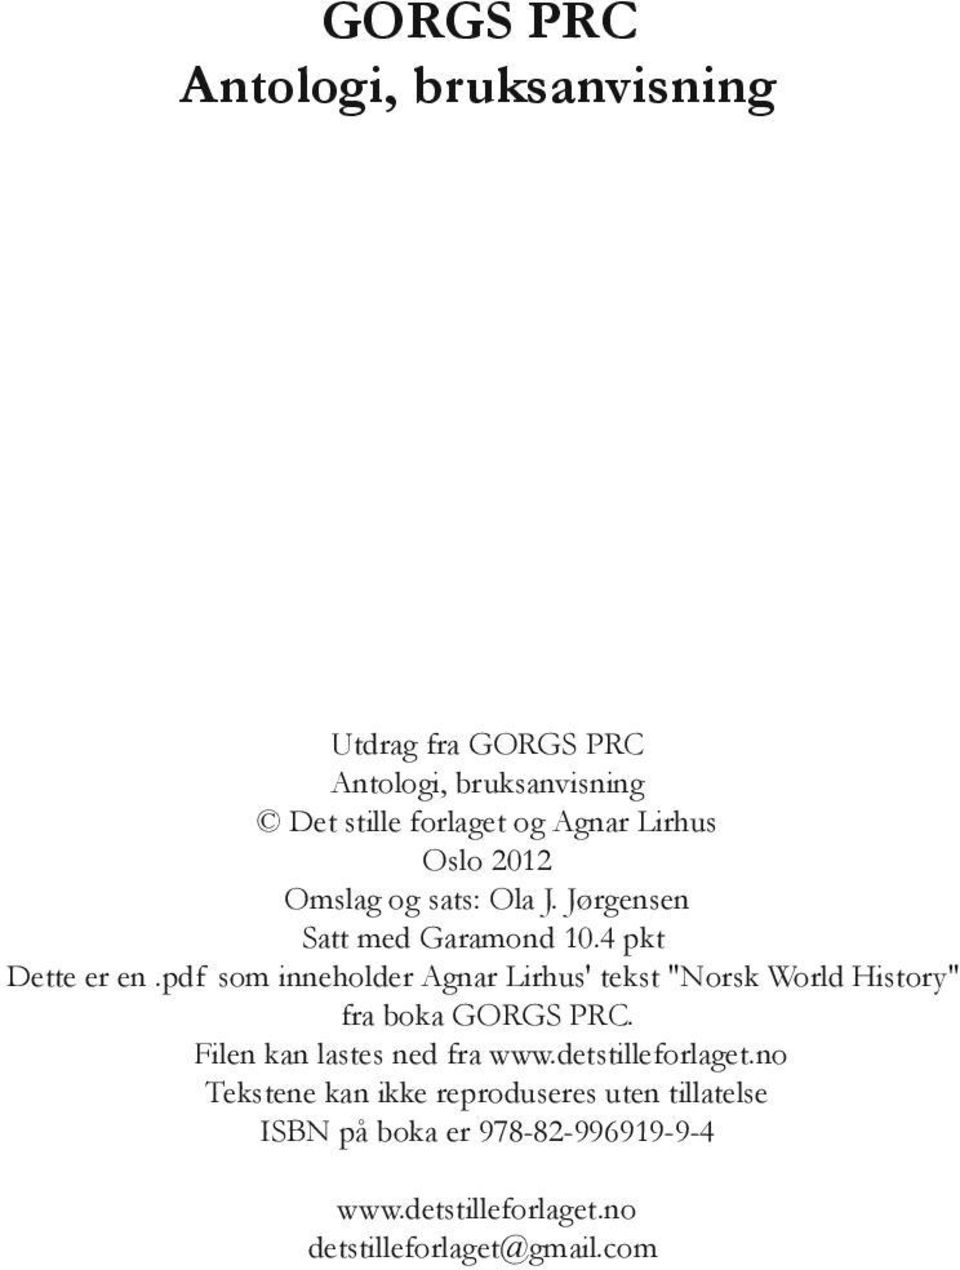 pdf som inneholder Agnar Lirhus' tekst "Norsk World History" fra boka GORGS PRC. Filen kan lastes ned fra www.